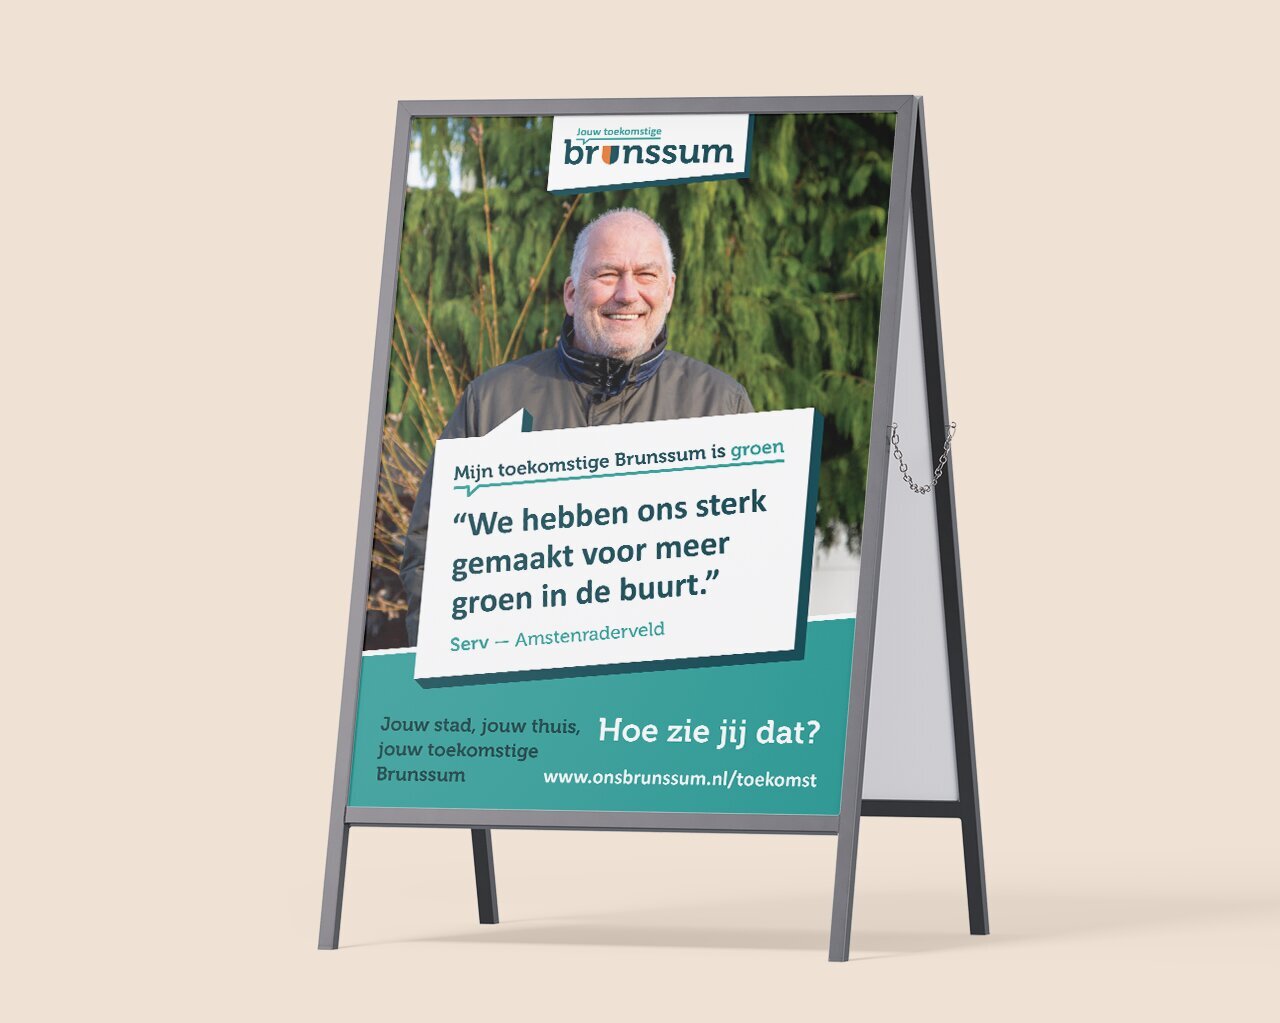 Ezeldisplay met een poster met een lachende man en Nederlandse tekst over groene initiatieven in Brunssum, ter promotie van de visie van Jouw Toekomstige Brunssum.